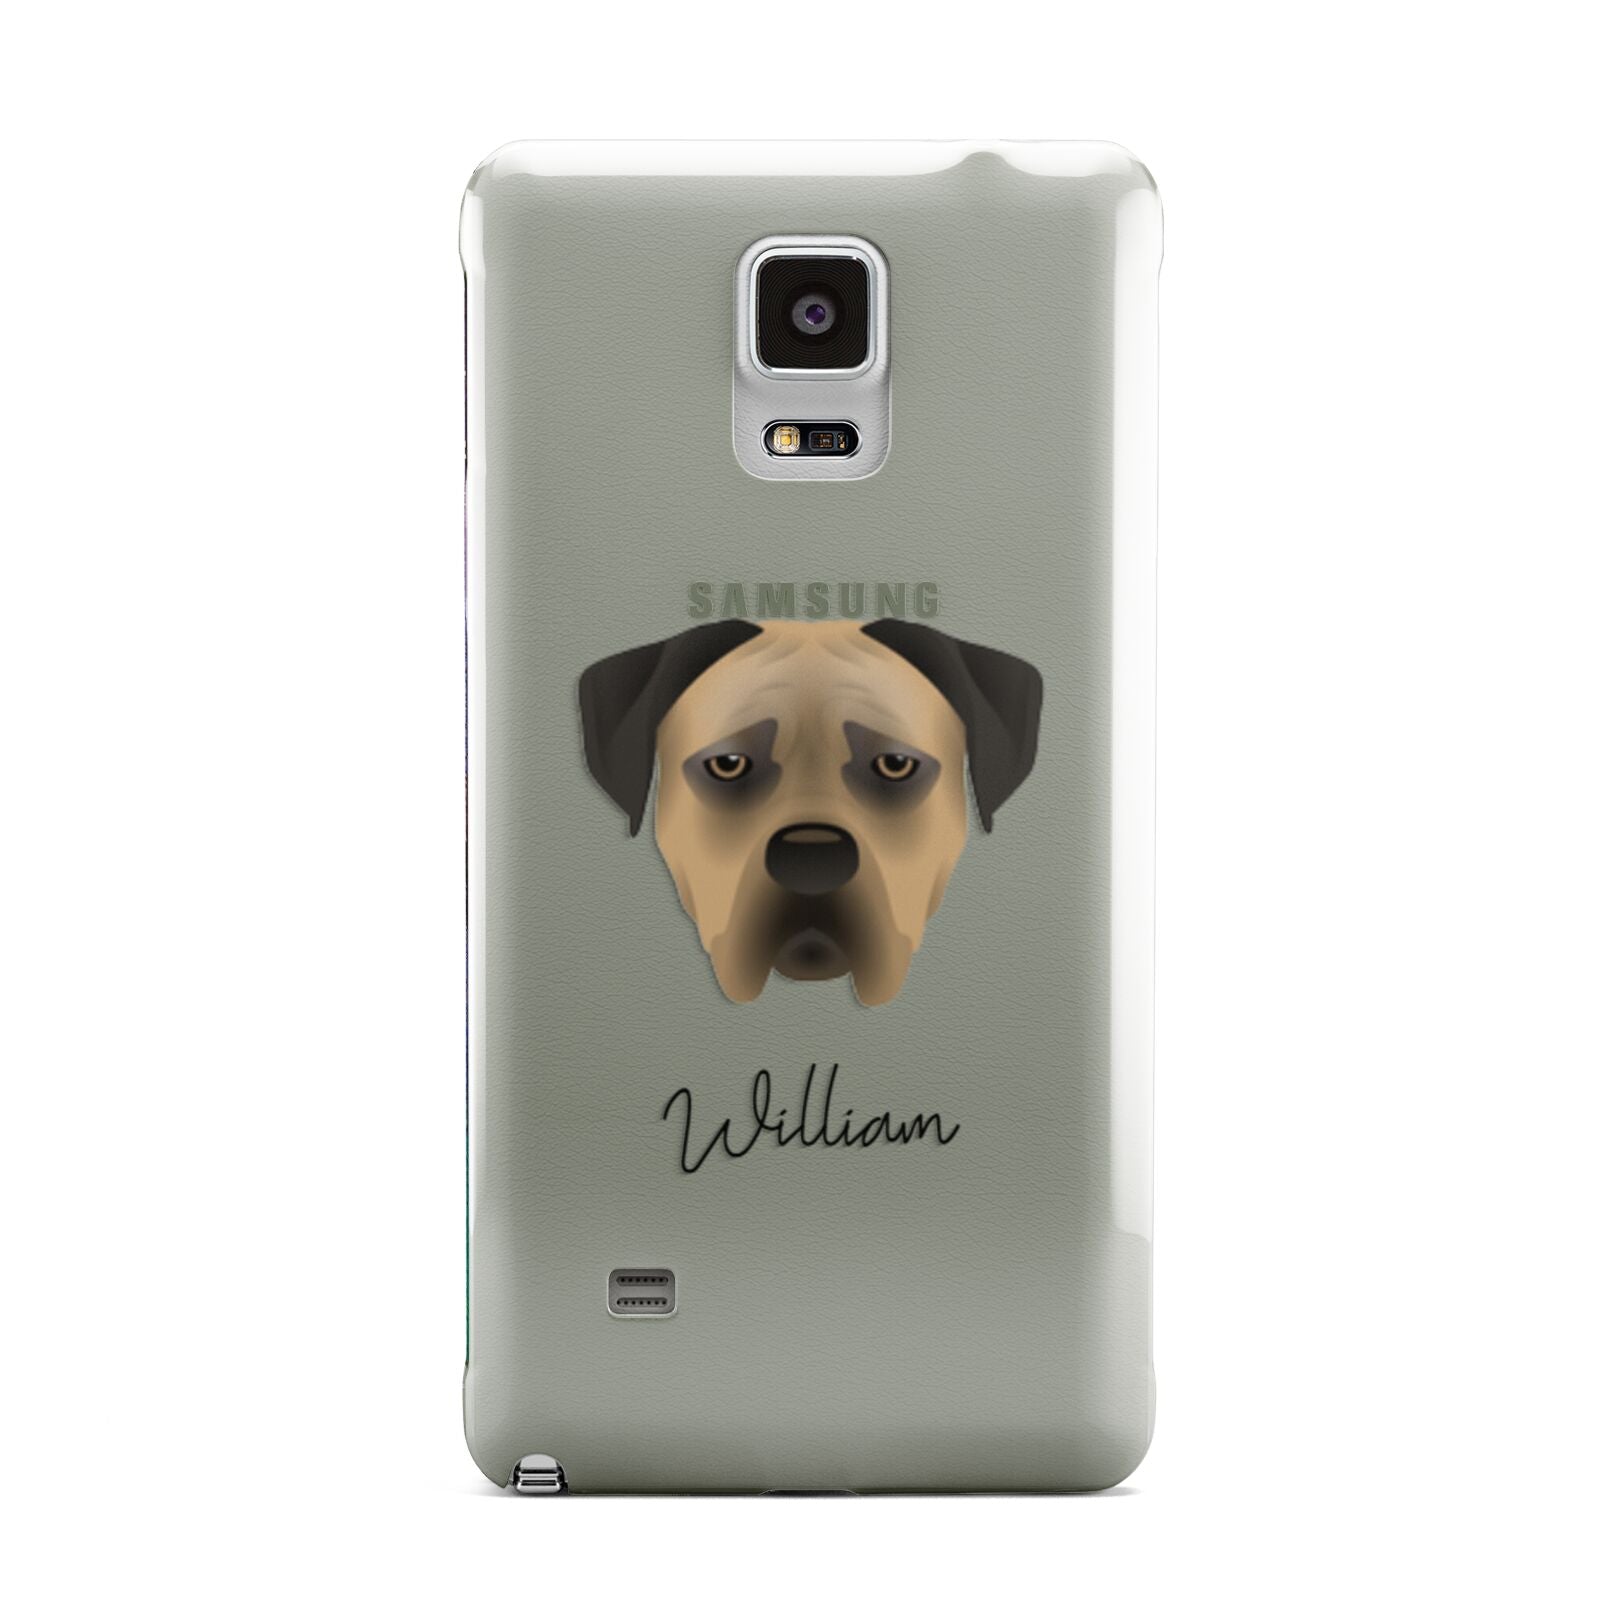 Boerboel Personalised Samsung Galaxy Note 4 Case